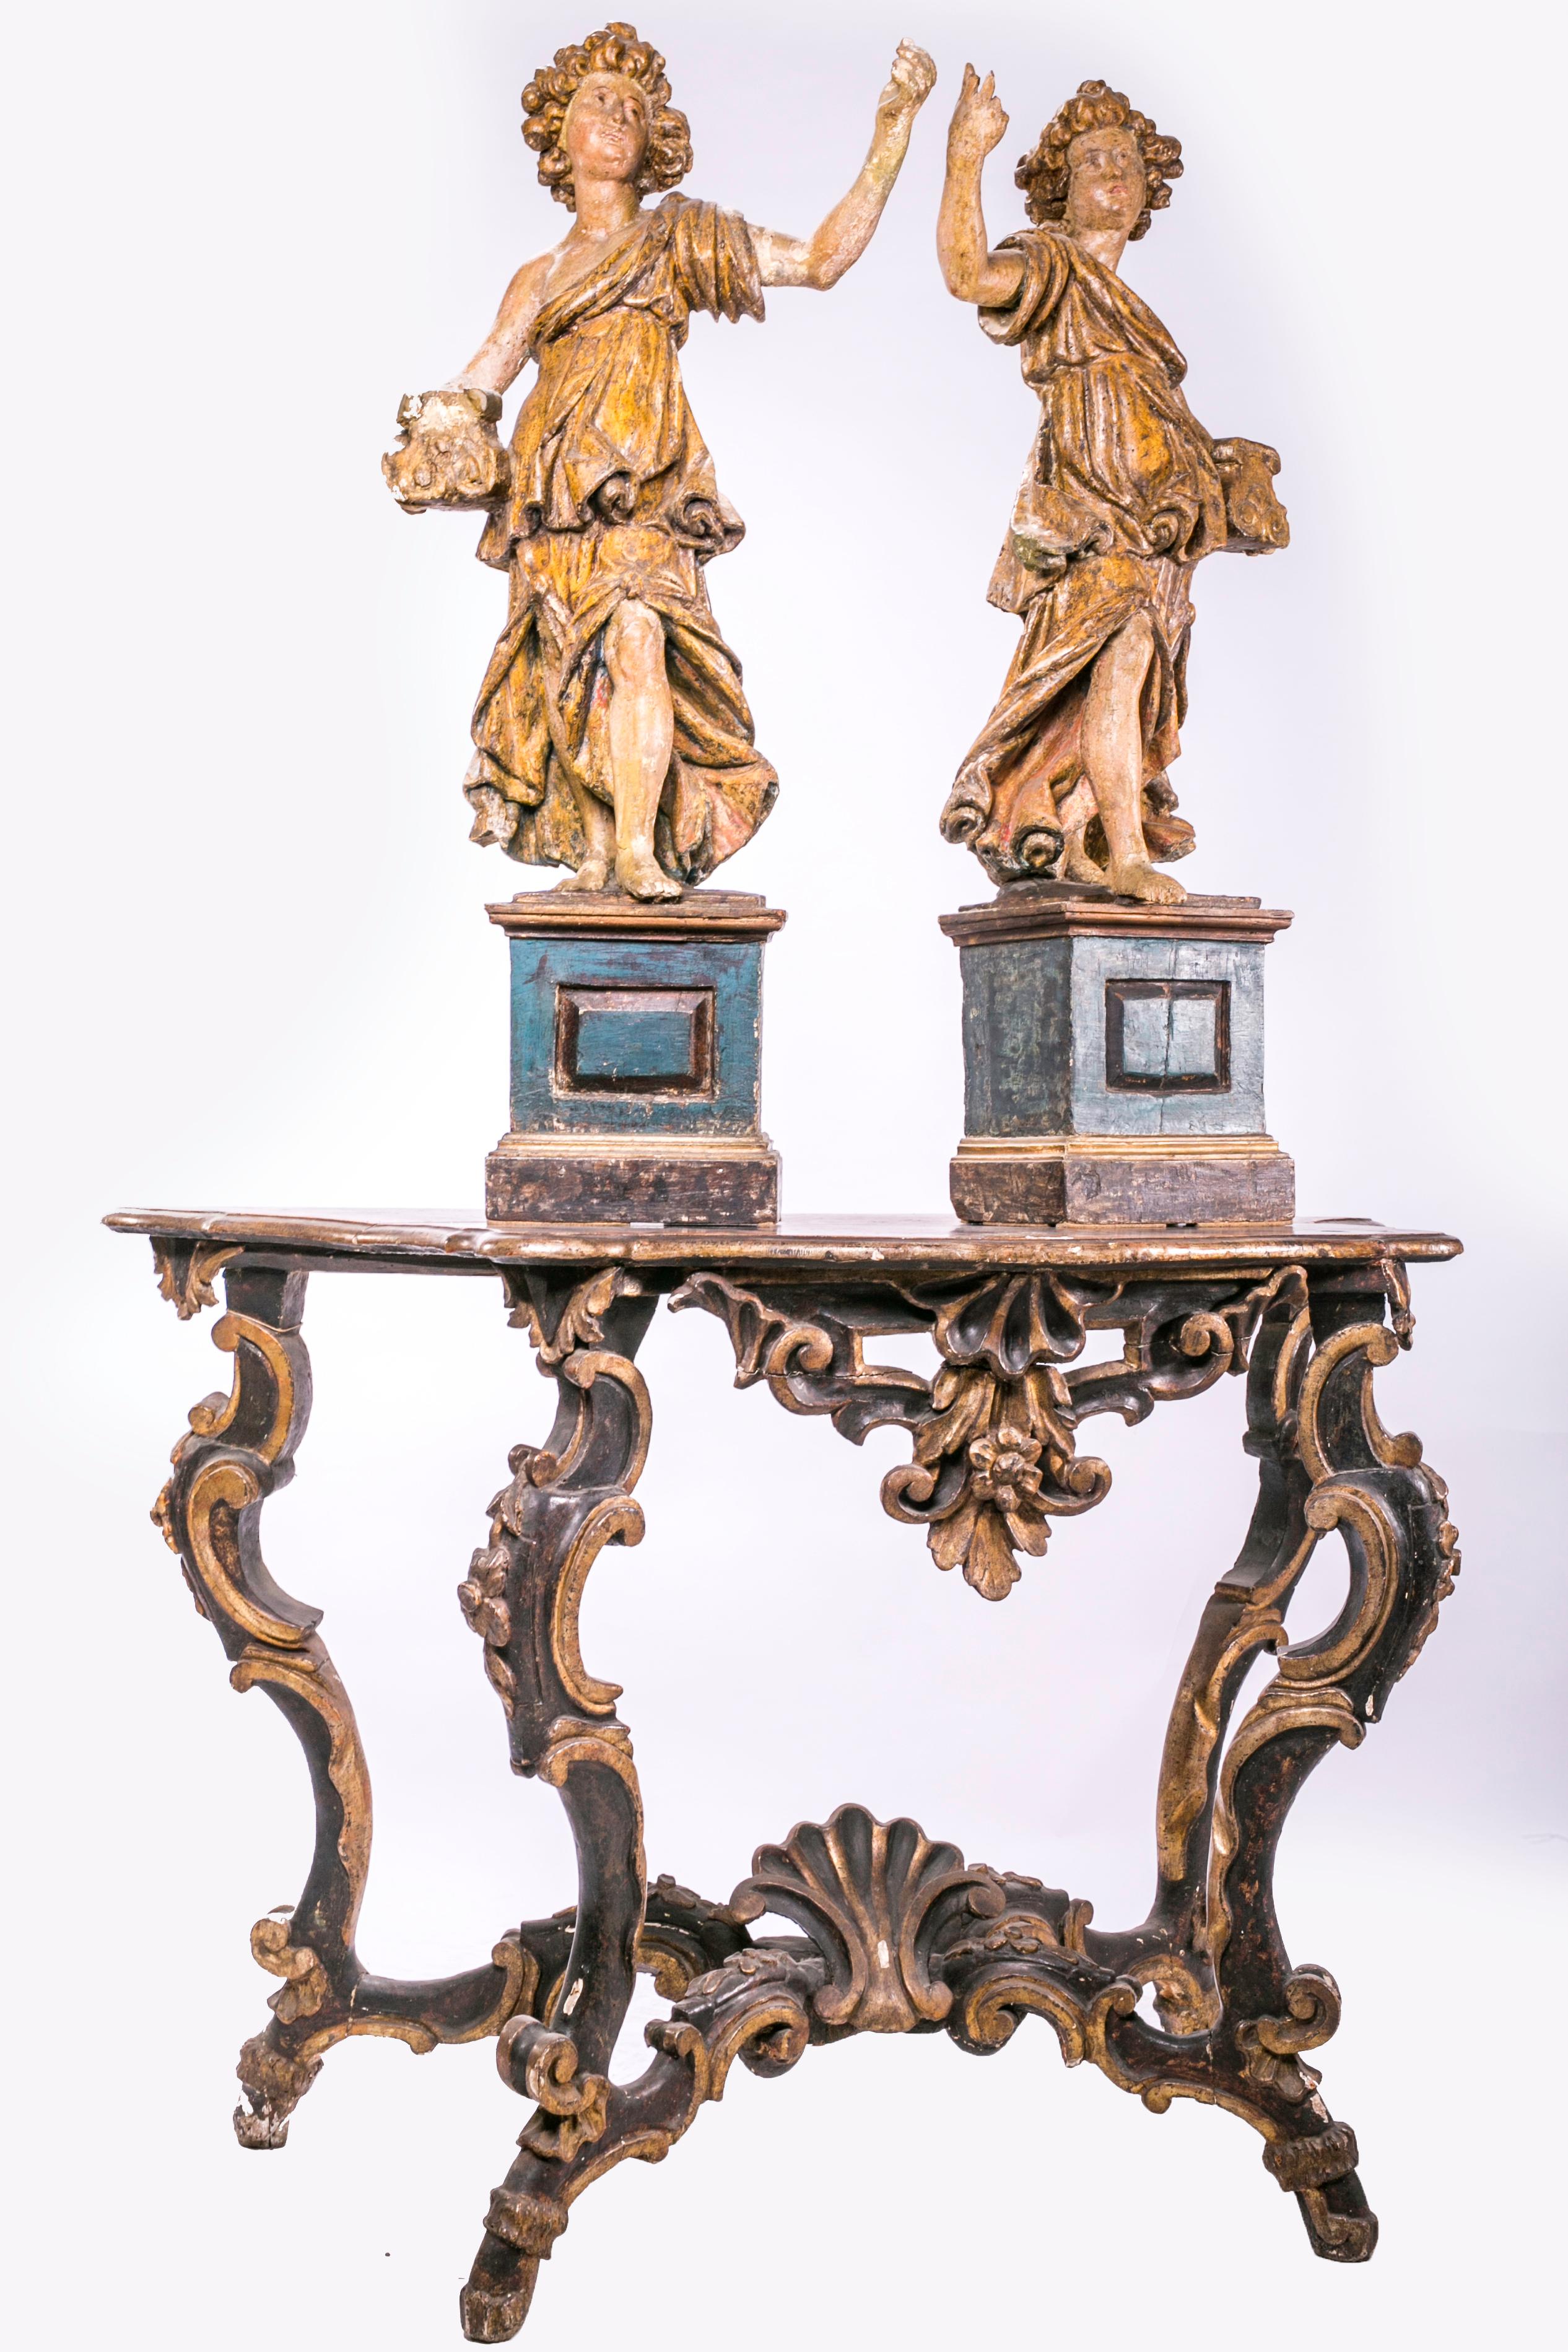 Geschnitzte und lackierte Engel aus den 1700er Jahren. 
Angels alle original, nie restauriert.

Holzschnitzereien in der Runde, geschnitzt, lackiert und vergoldet mit 